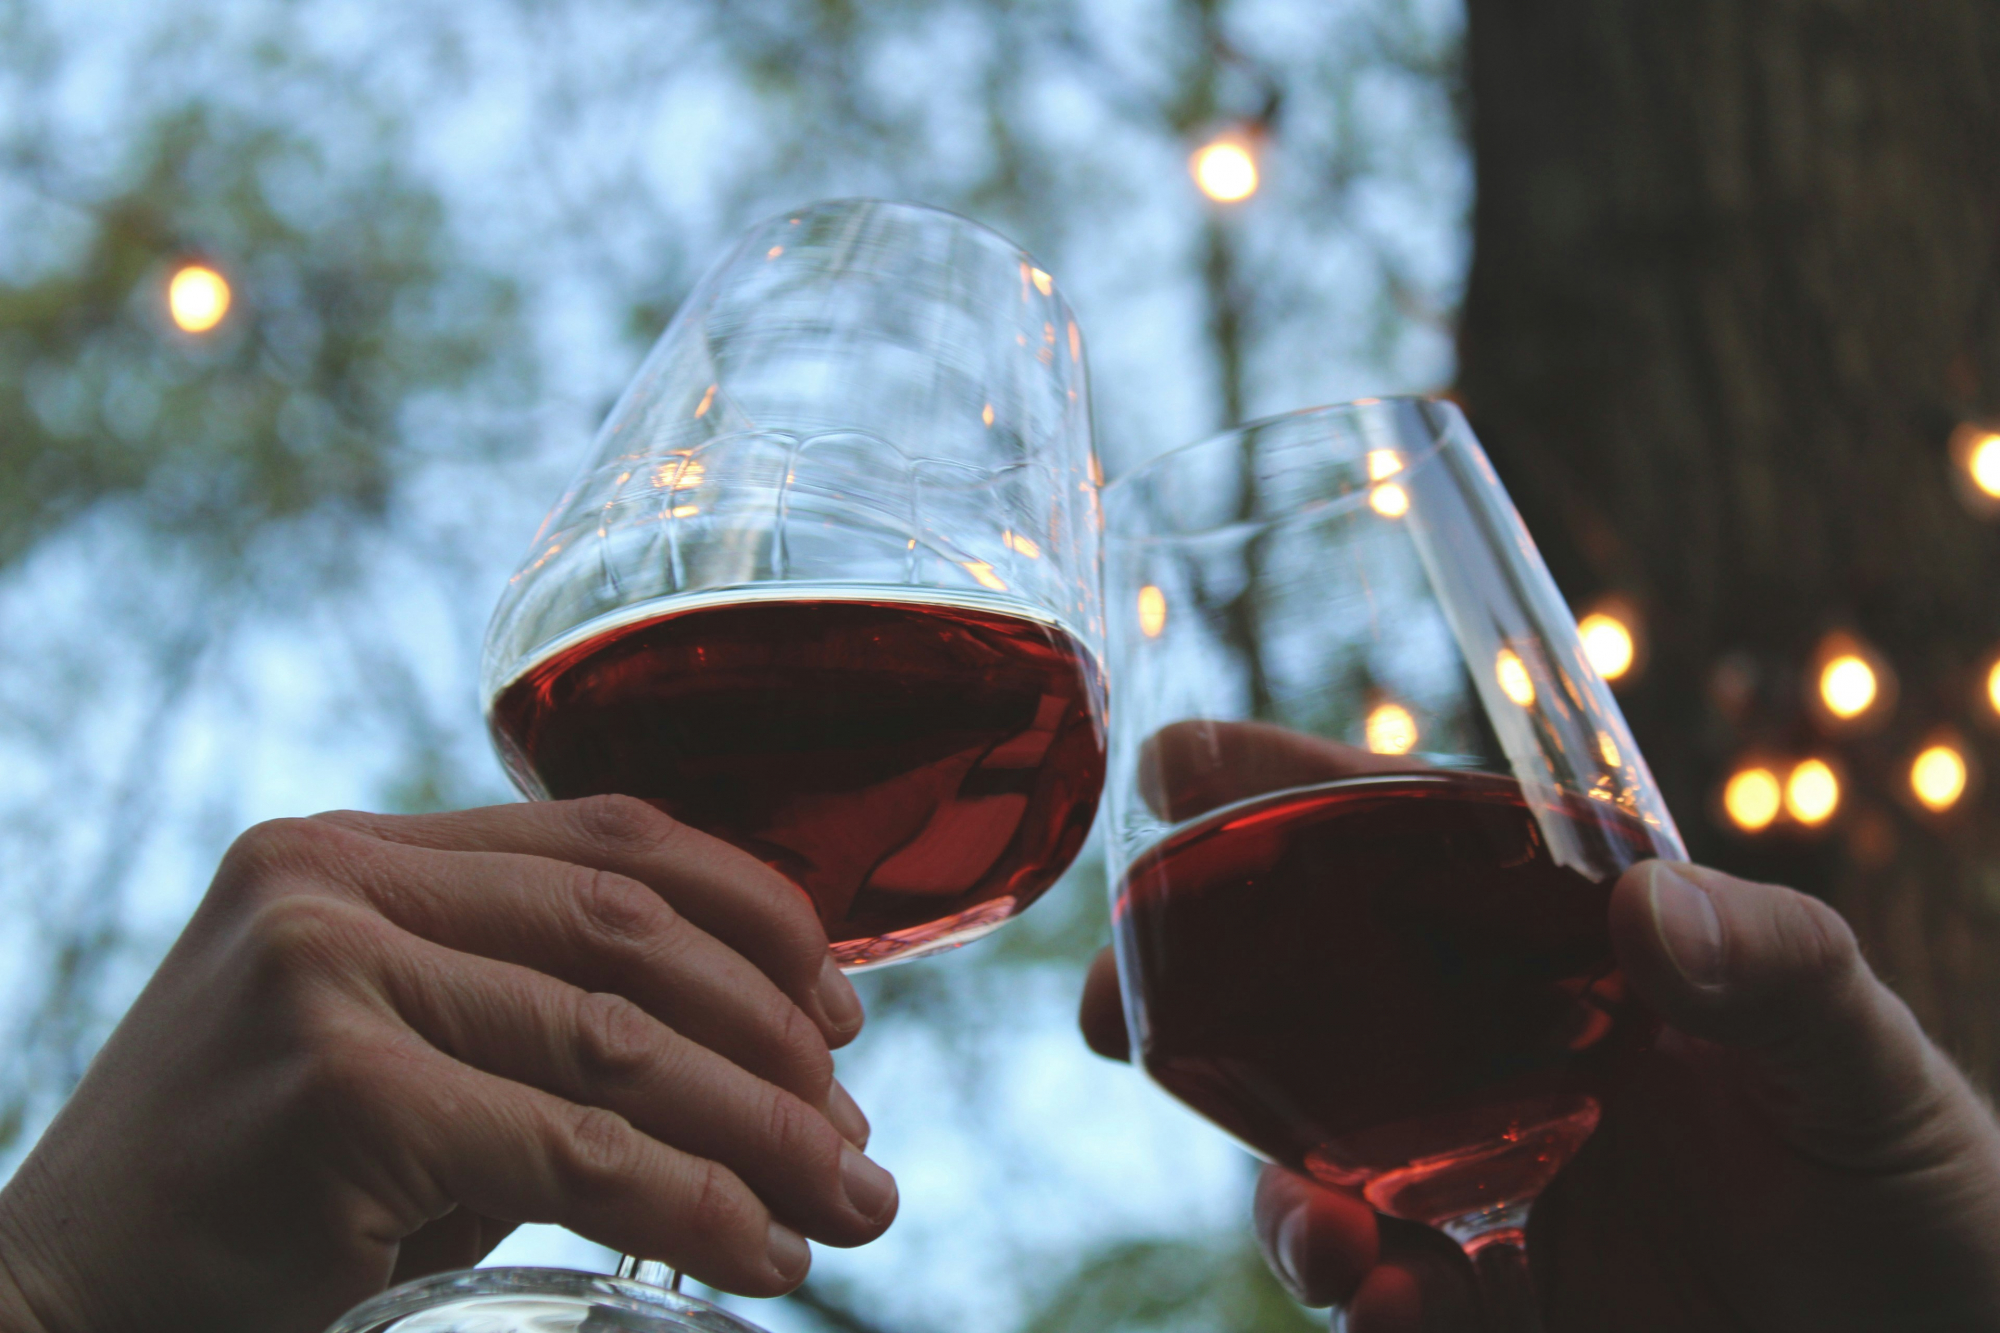 découvrez une sélection de vins rouges de qualité supérieure pour accompagner vos repas et savourer des moments exquis.